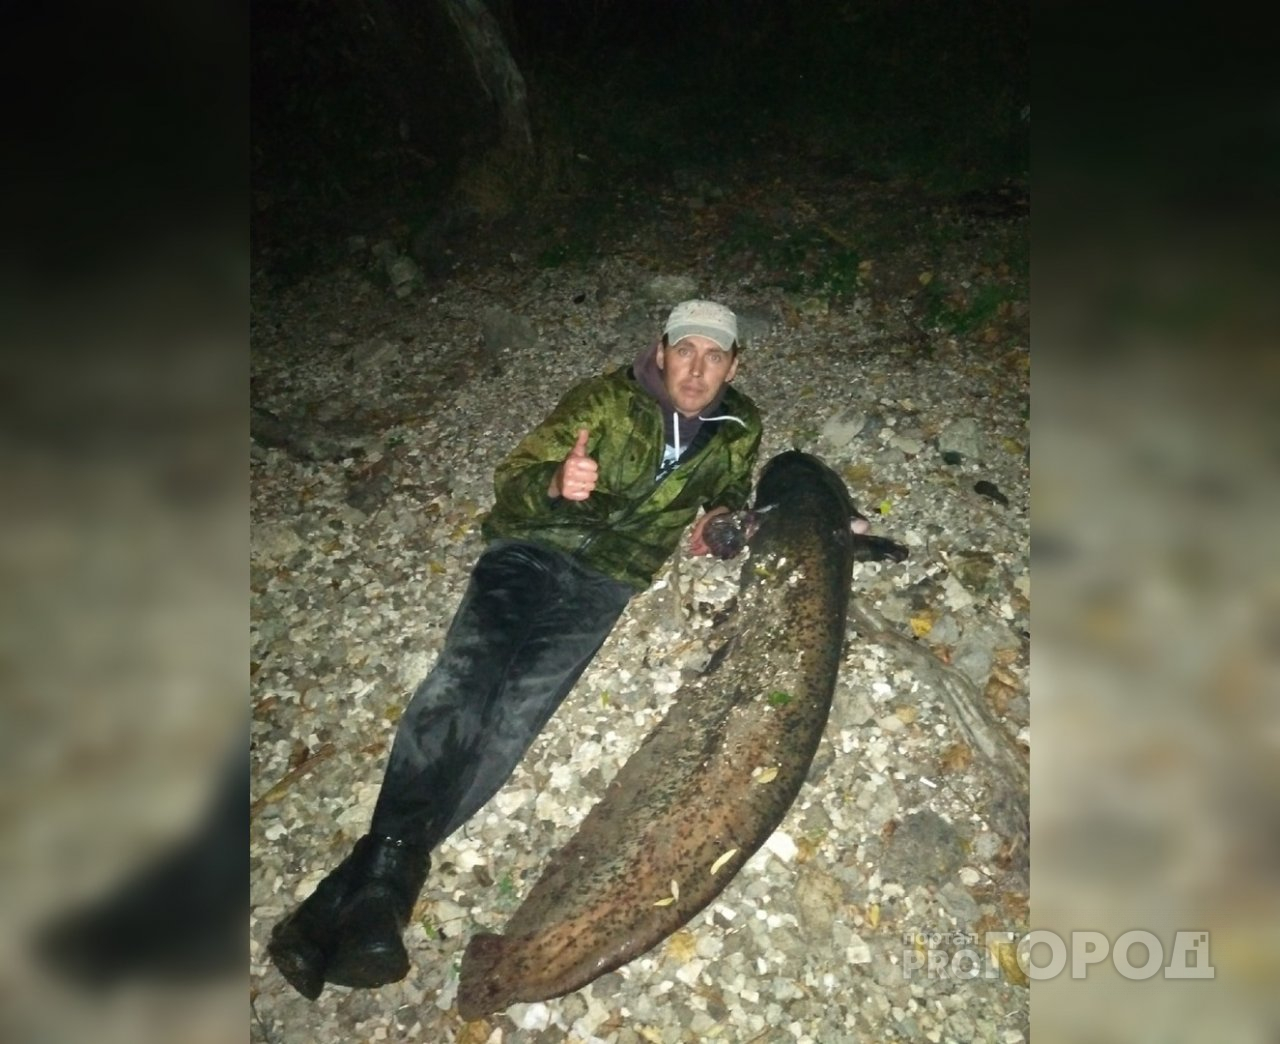 "Сидел на судака, а поймал 20-килограммового сома": житель Чувашии о своей неожиданной удаче